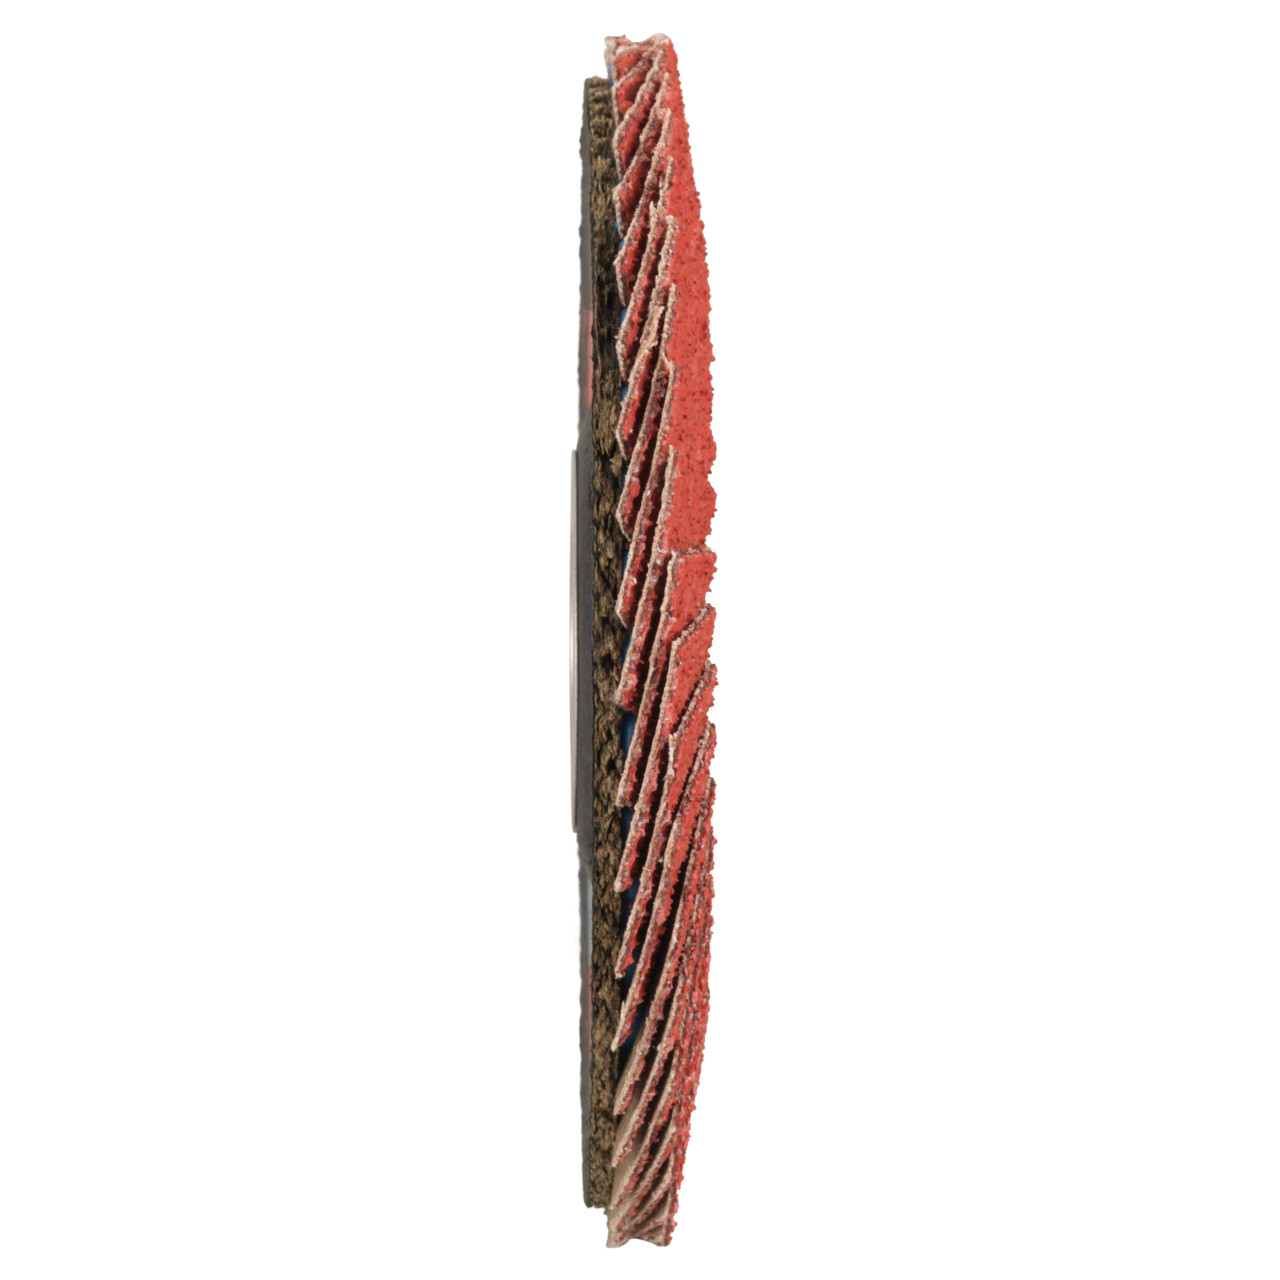 Tyrolit Rondelle éventail DxH 115x22,23 CERAMIC pour acier inoxydable, P60, forme : 28A - modèle droit (modèle à corps en fibre de verre), art. 719798